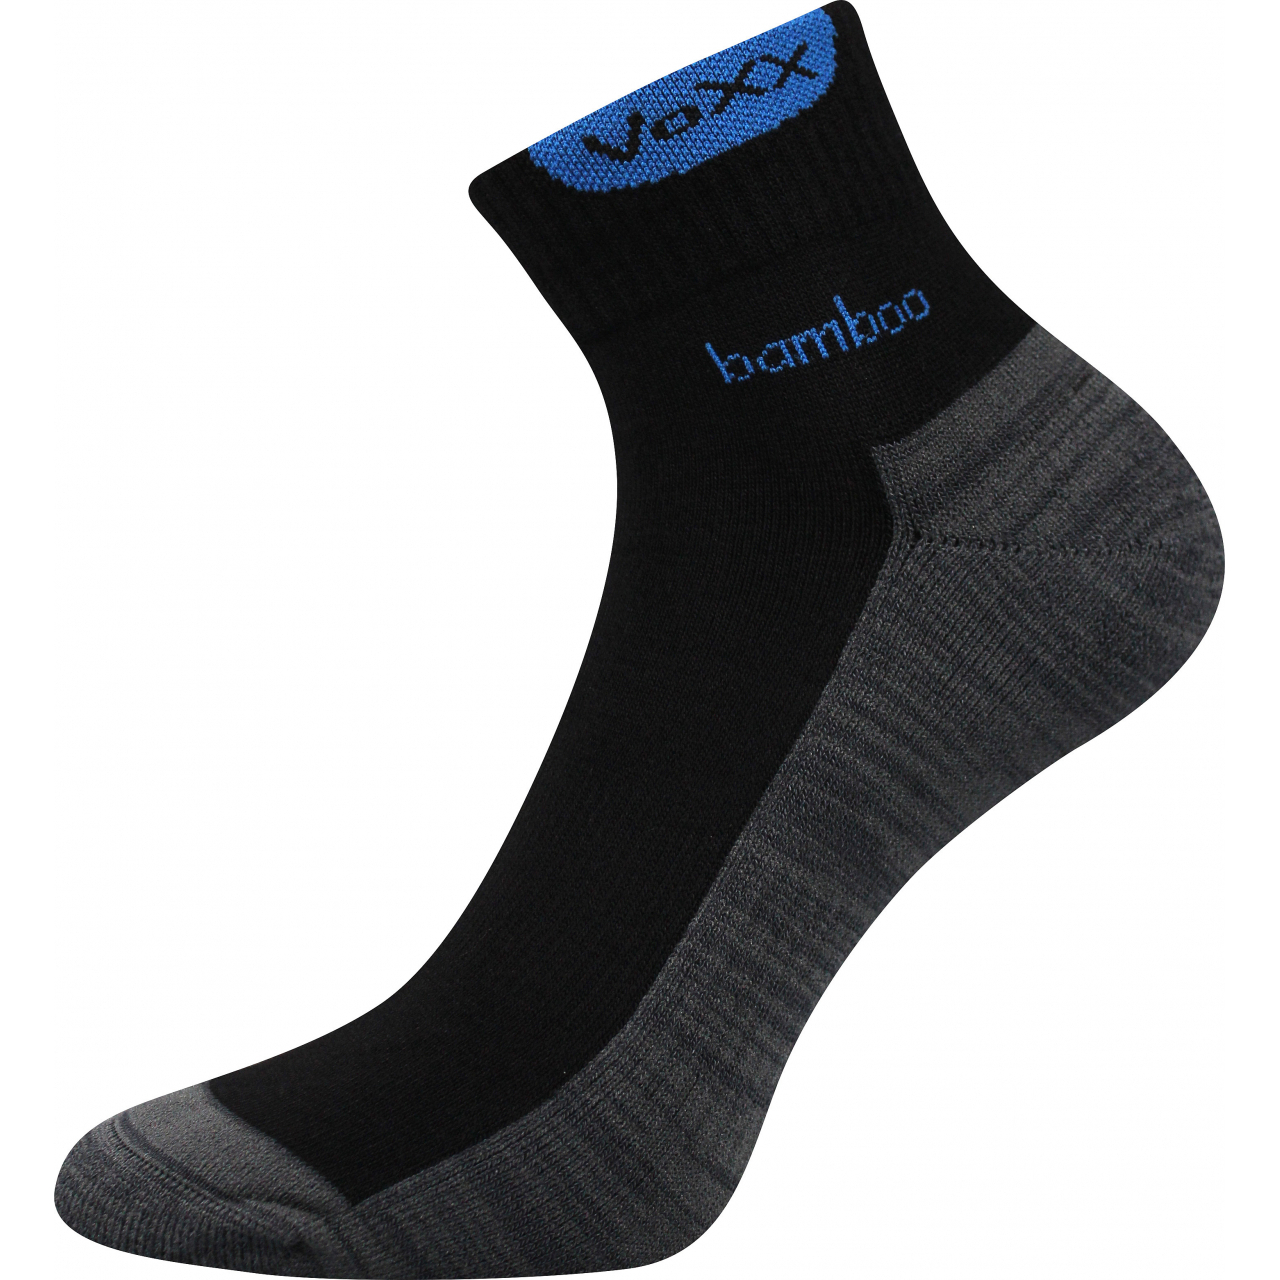 Ponožky sportovní Voxx Brooke - černé-šedé, 43-46